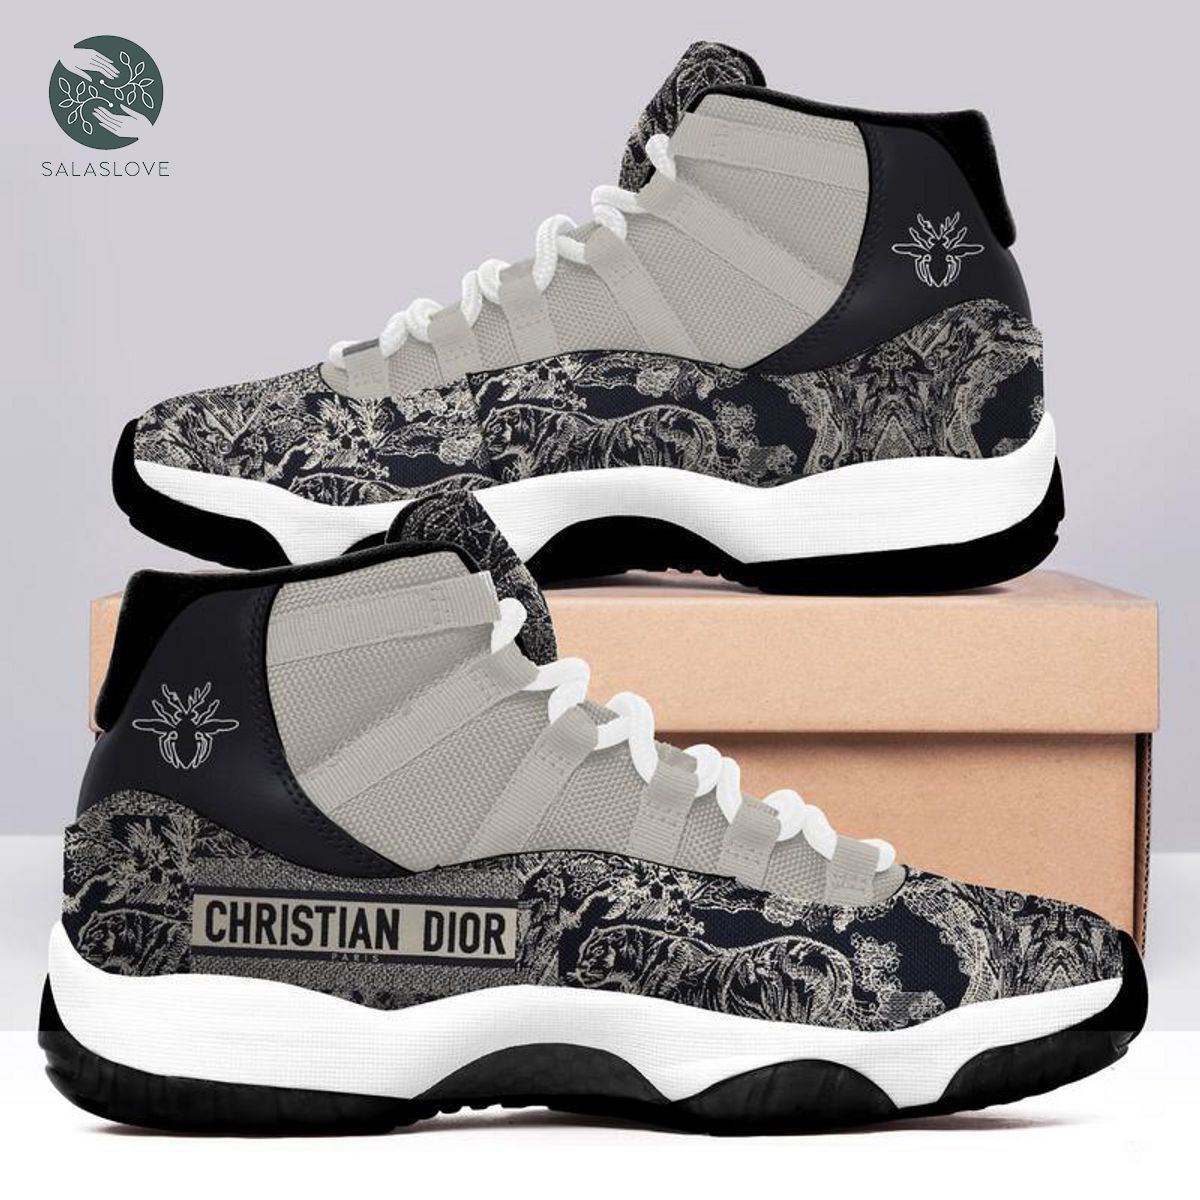 Christian Dior Luxury Air Jordan 11 Shoes

